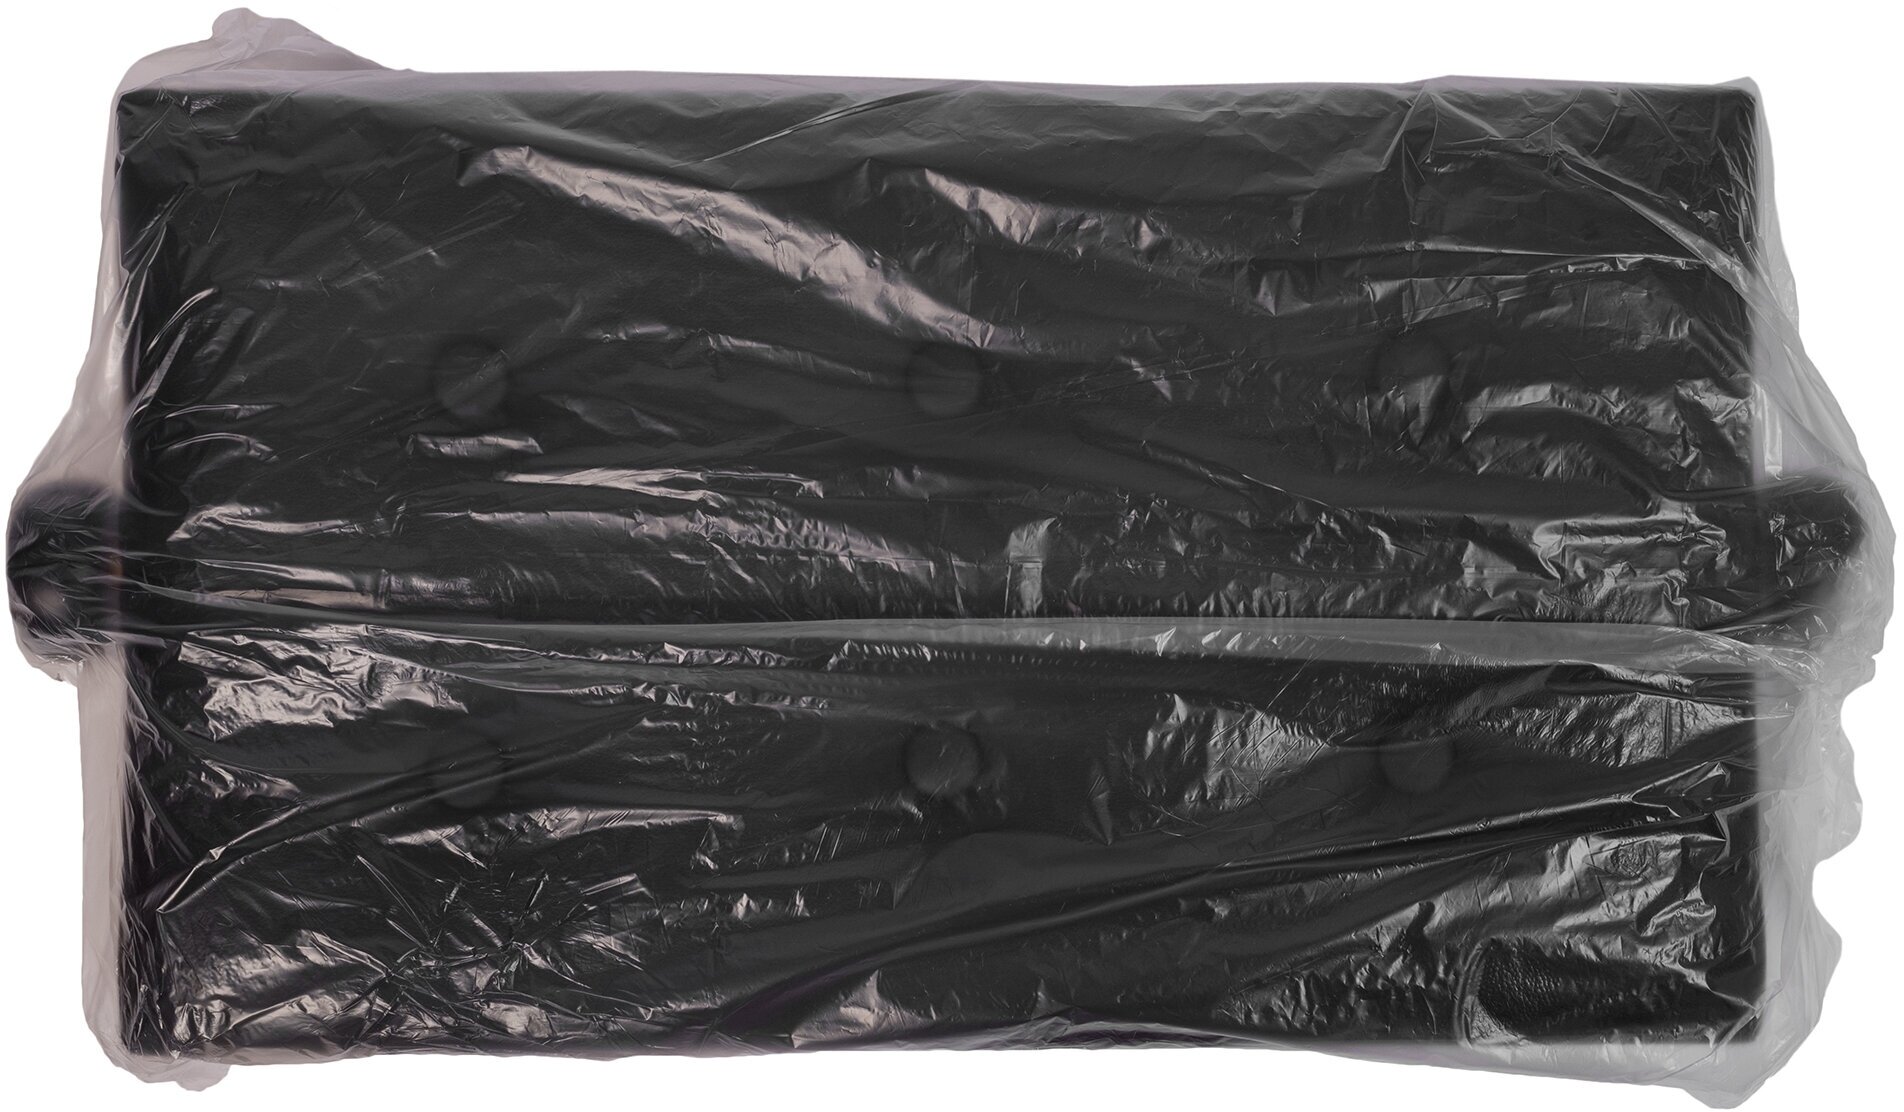 Rockdale Rhapsody 130 Black банкетка с регулировкой высоты от 47 до 56 цвет черный